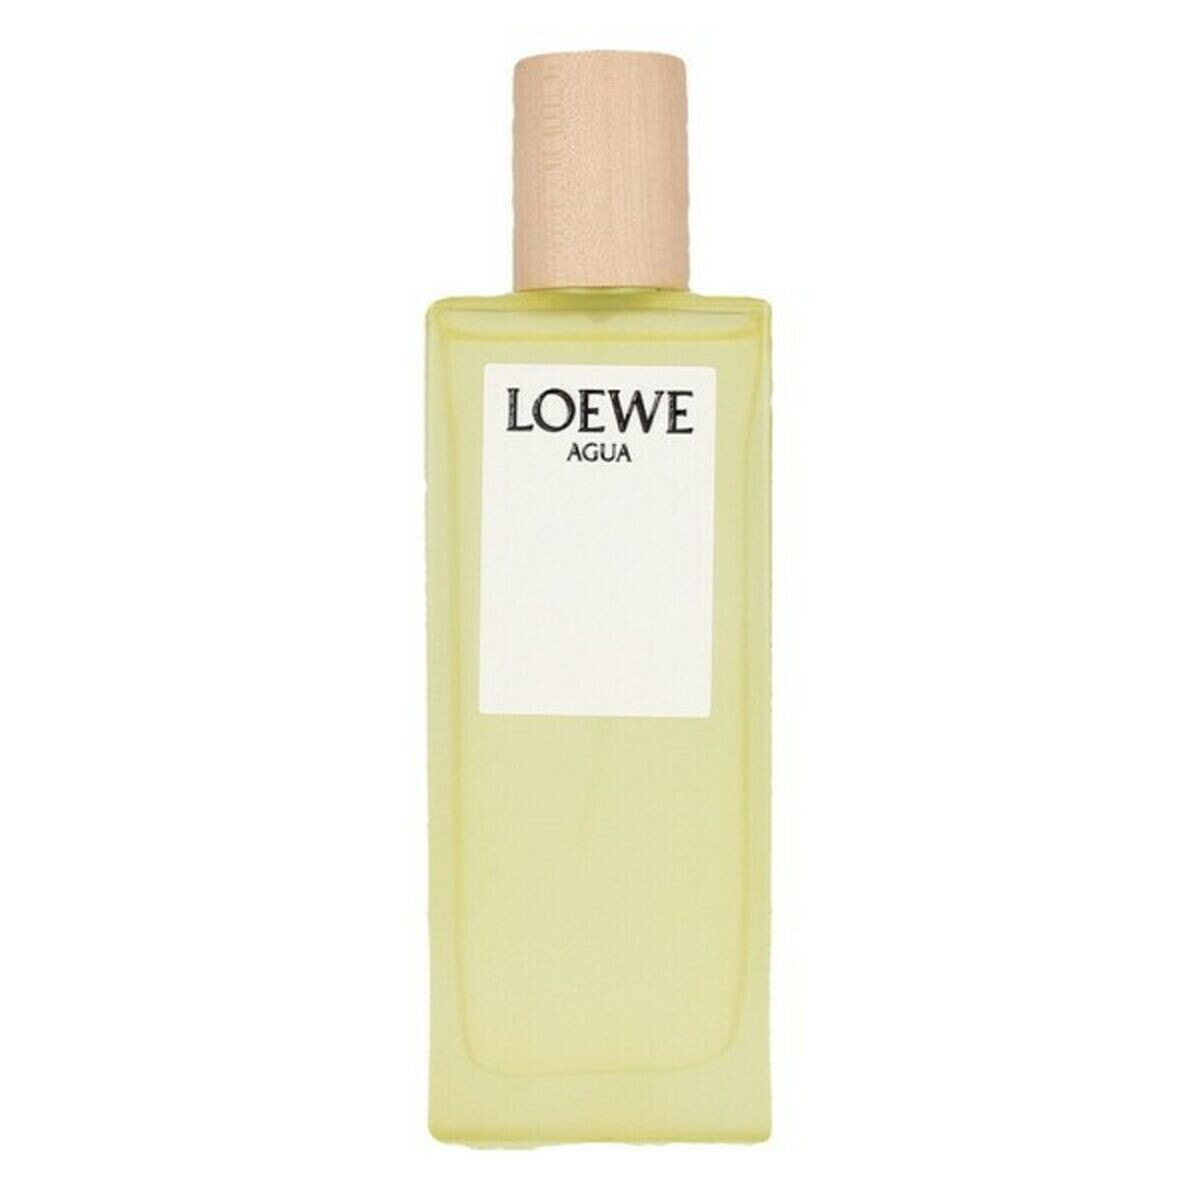 духи Agua Loewe EDT (50 ml)